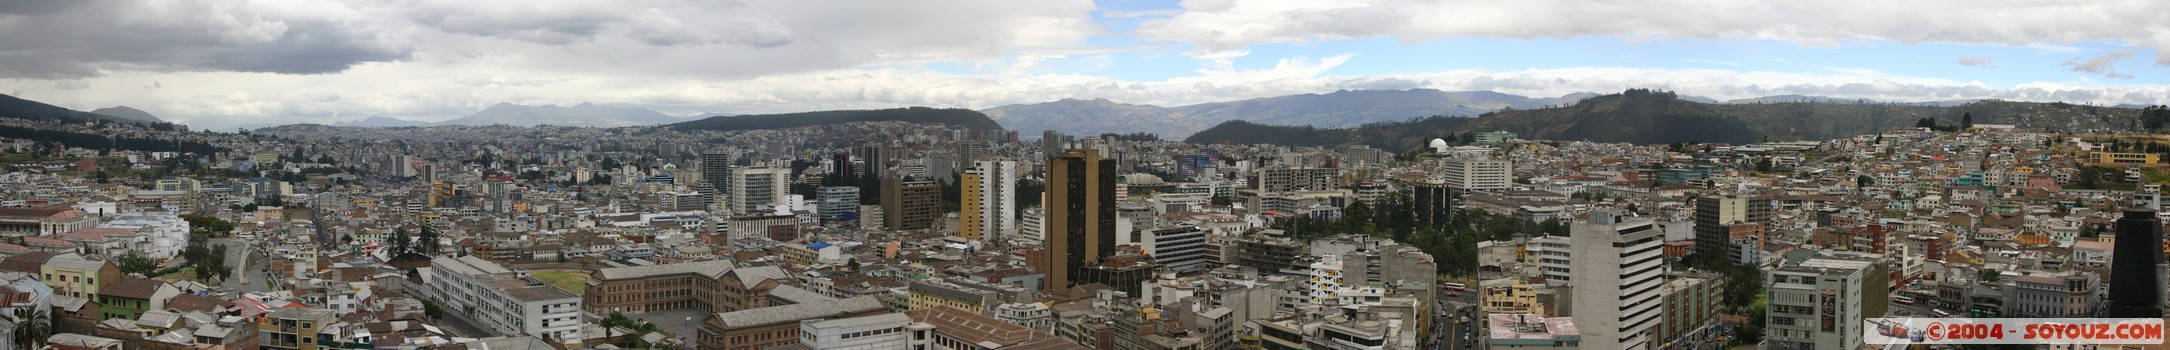 Quito - Basilica del Sagrado Voto Nacional - panoramique
Mots-clés: Ecuador Eglise panorama